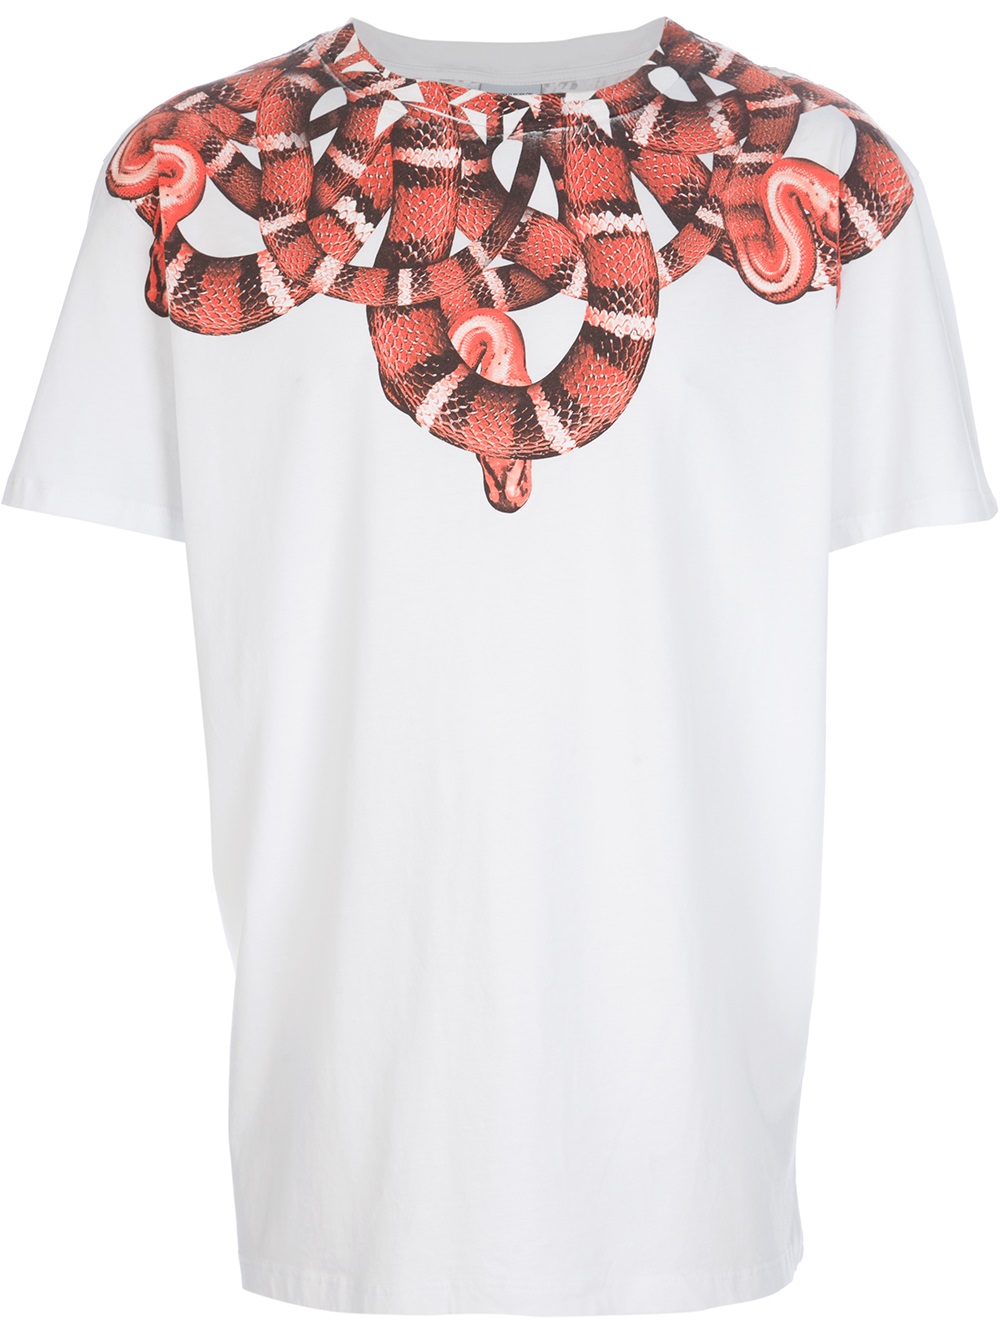 Marcelo Burlon Moon Snake Print Tshirt in White for Men - Lyst